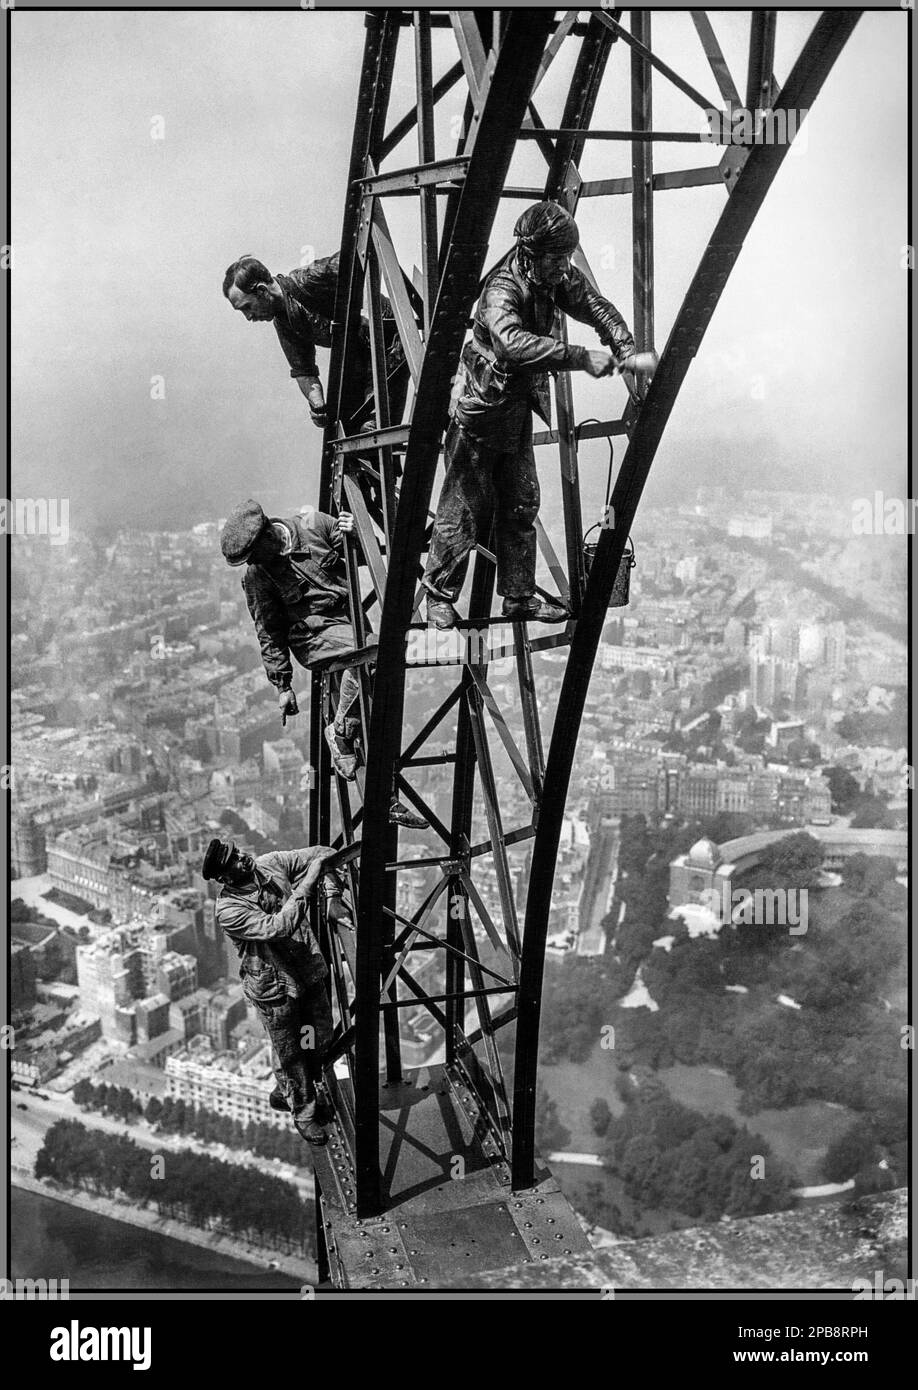 1920er Jahre Eiffelturm Wartung 'Réfection de la peinture de la Tour Eiffel. Ummalung des Eiffelturms 1924. Der Eiffelturm Paris Frankreich Datum 27. August 1924 Aufnahme auf fotografischer Glasplatte Paris Frankreich Stockfoto